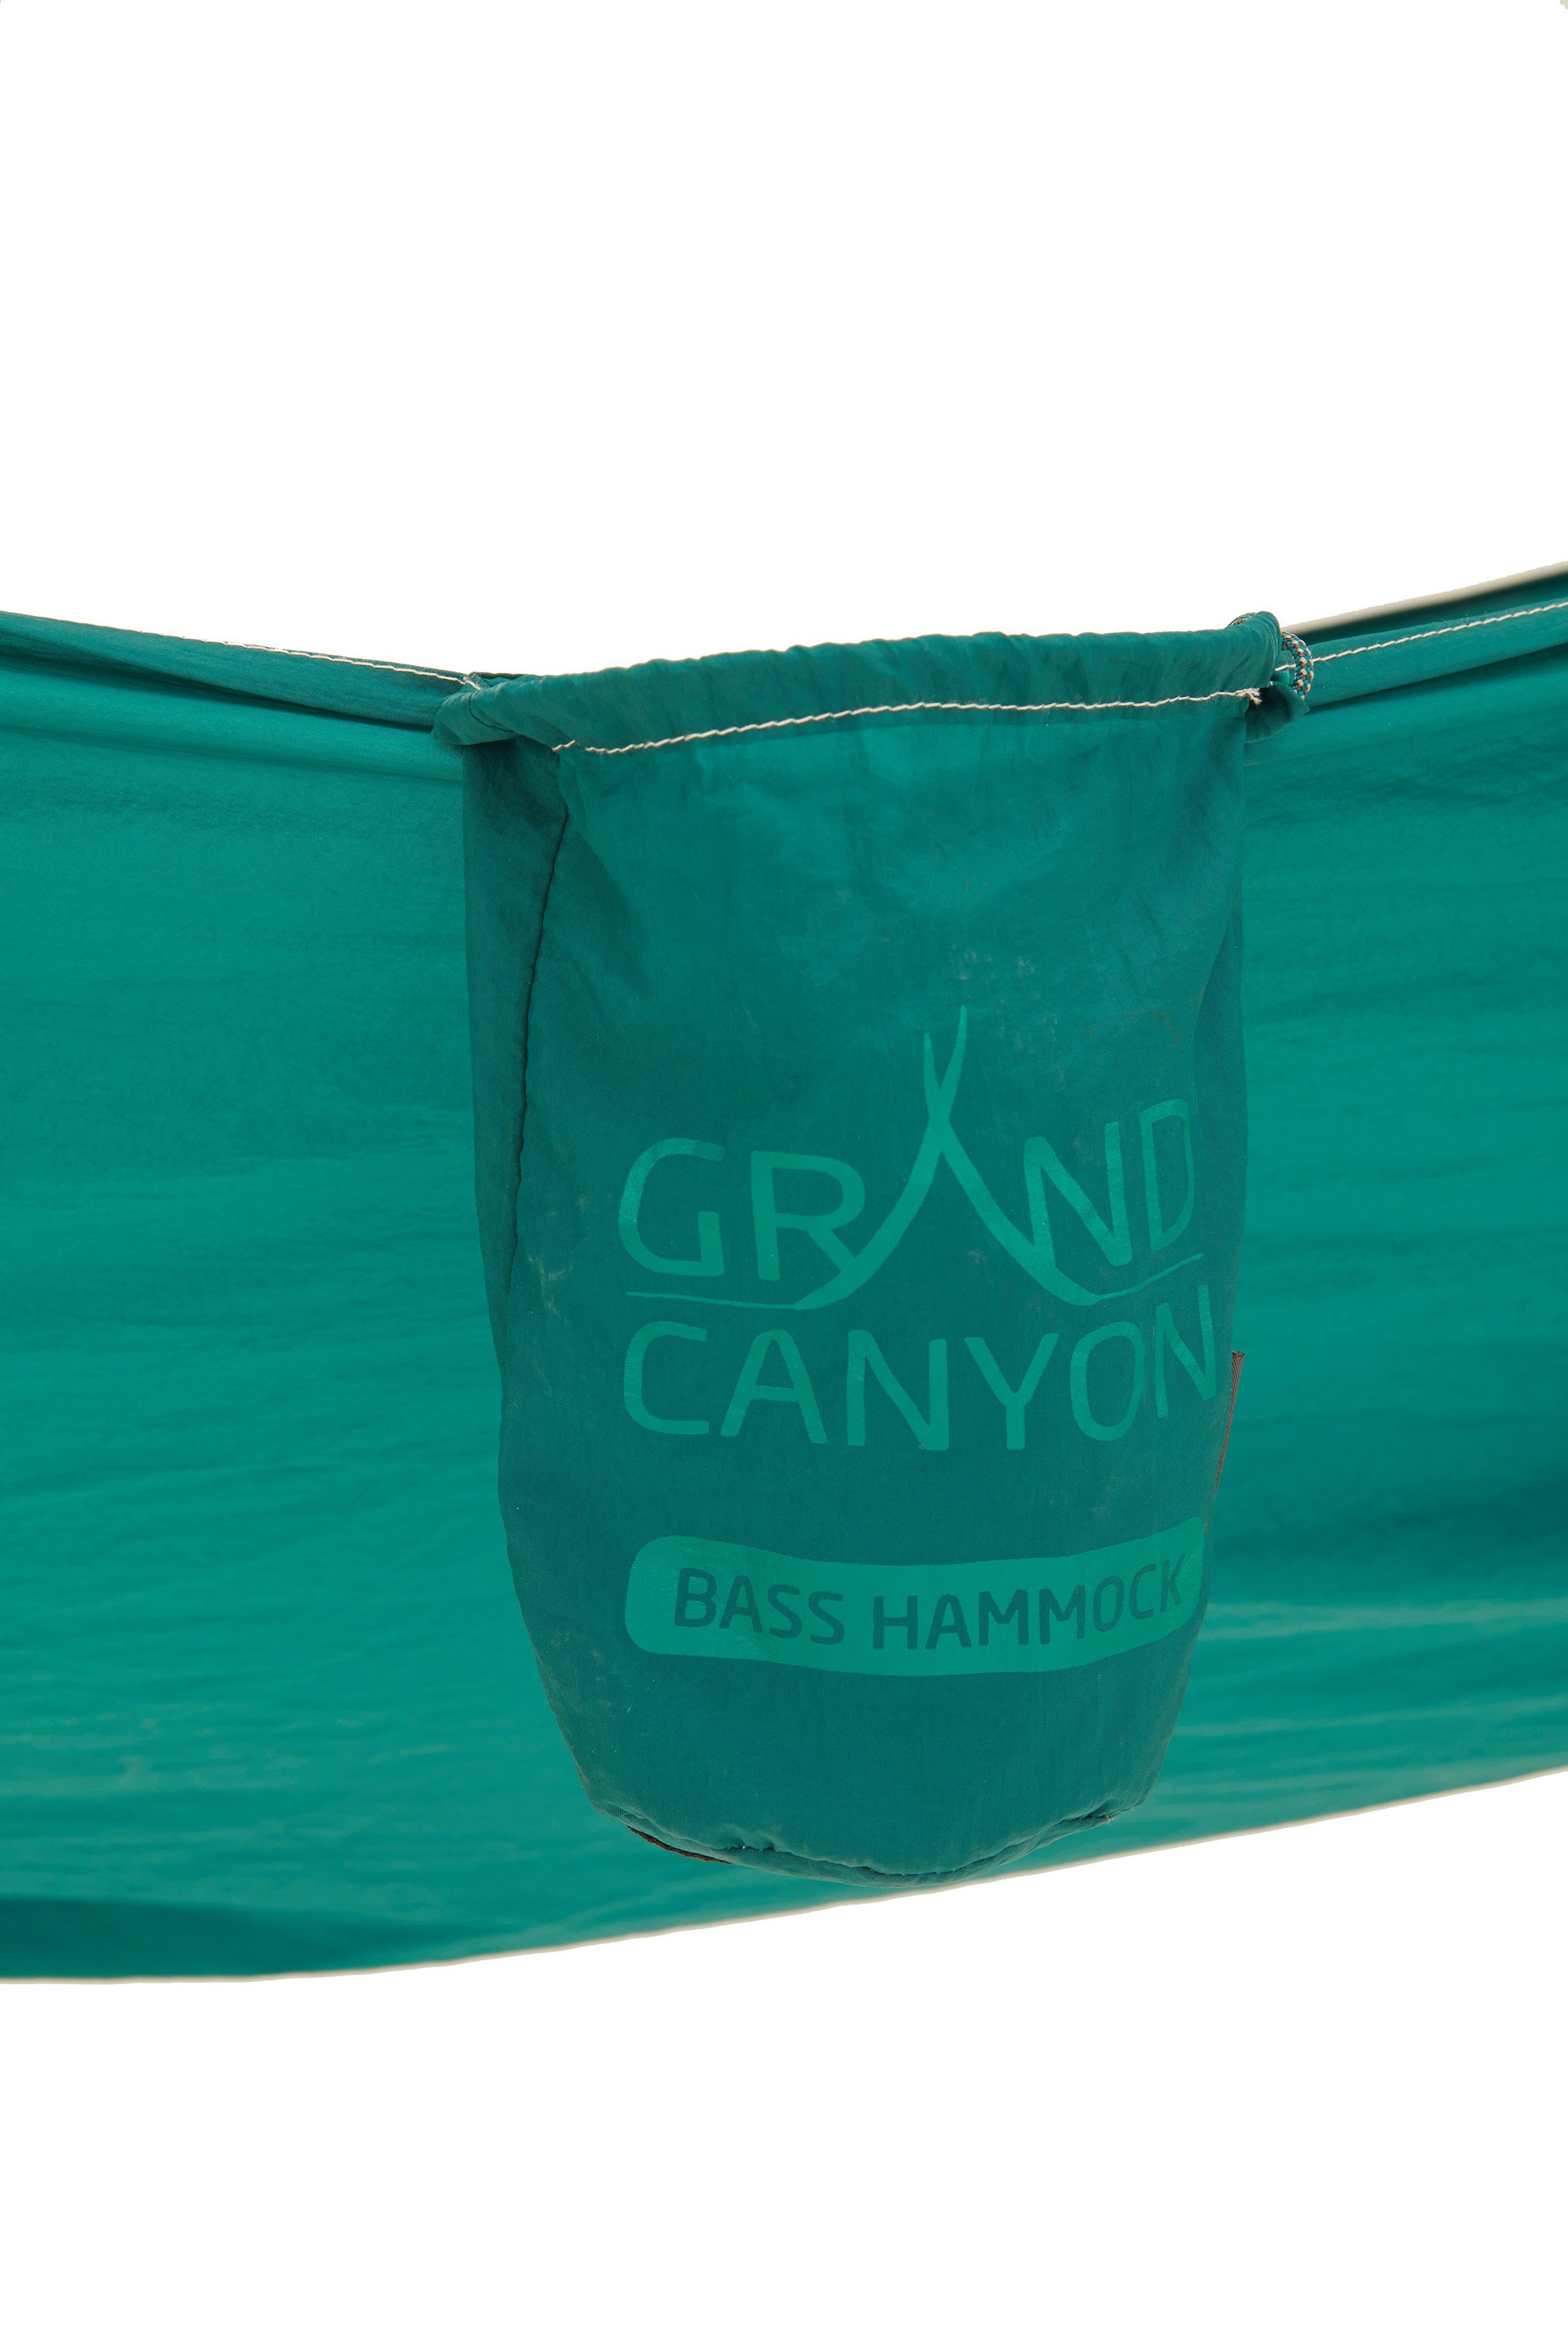 Hängematte Bass grün GRAND CANYON Hammock